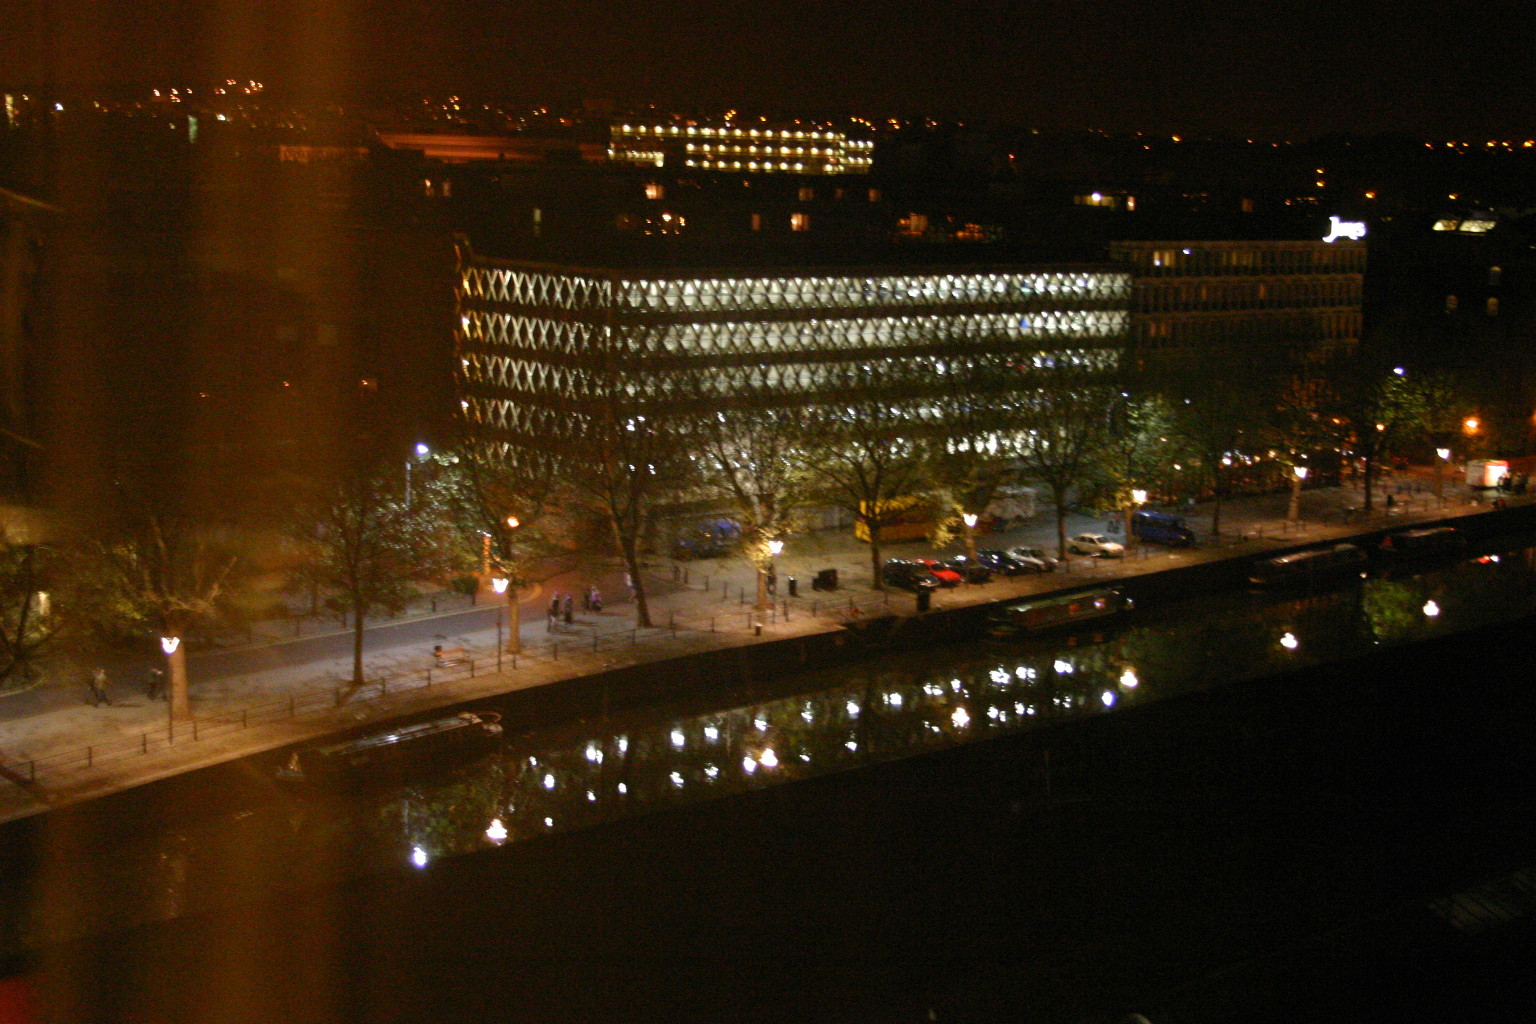 Waterside nightlife, as seen from hotel room